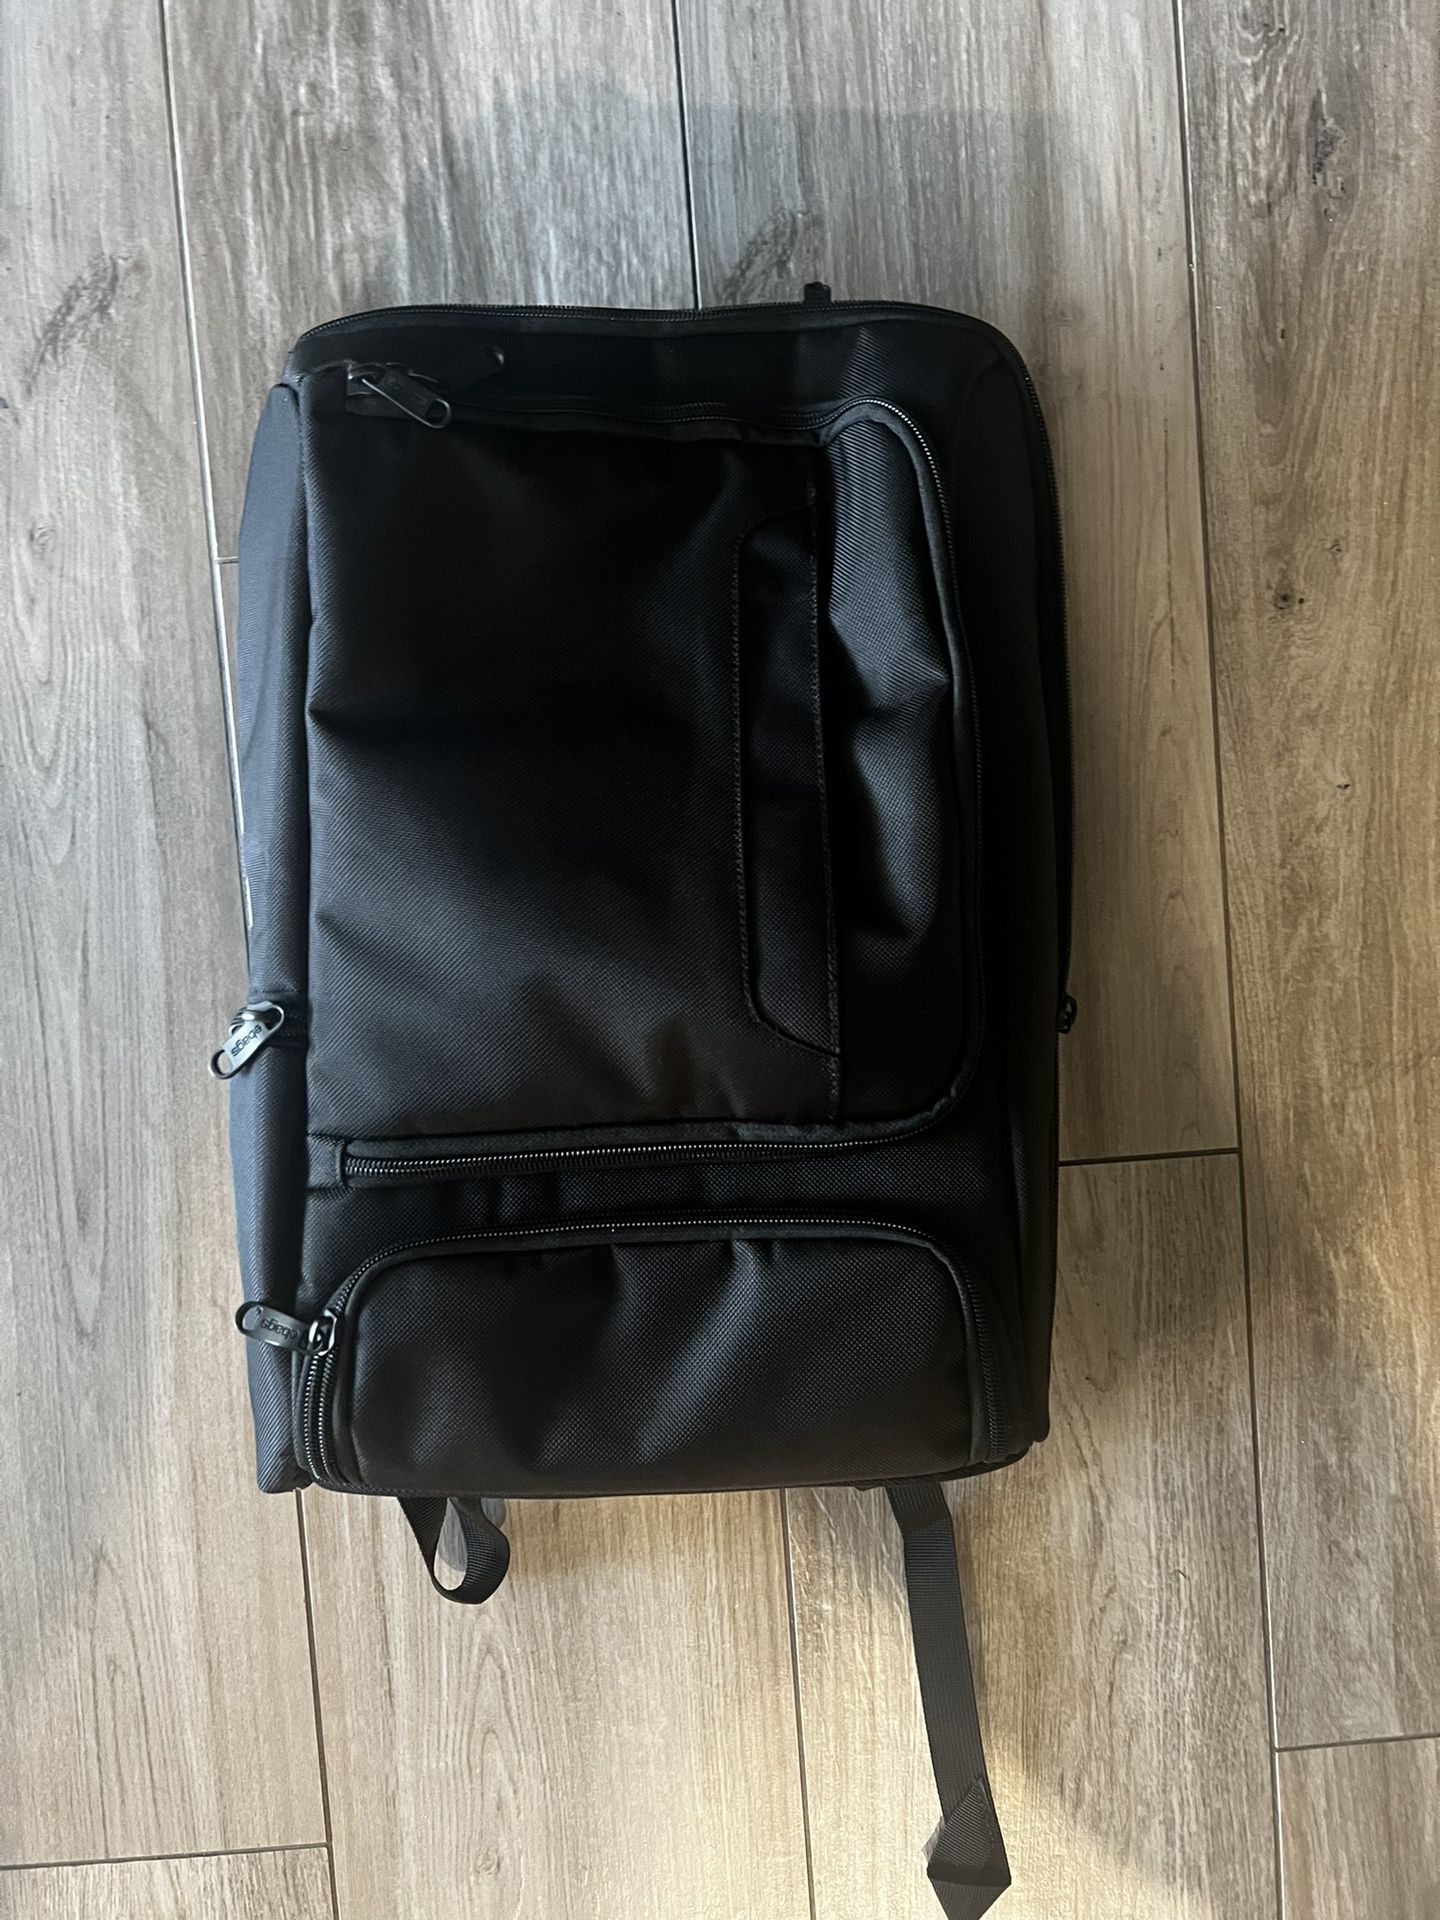 Ebags Pro Slim Laptop Backpack